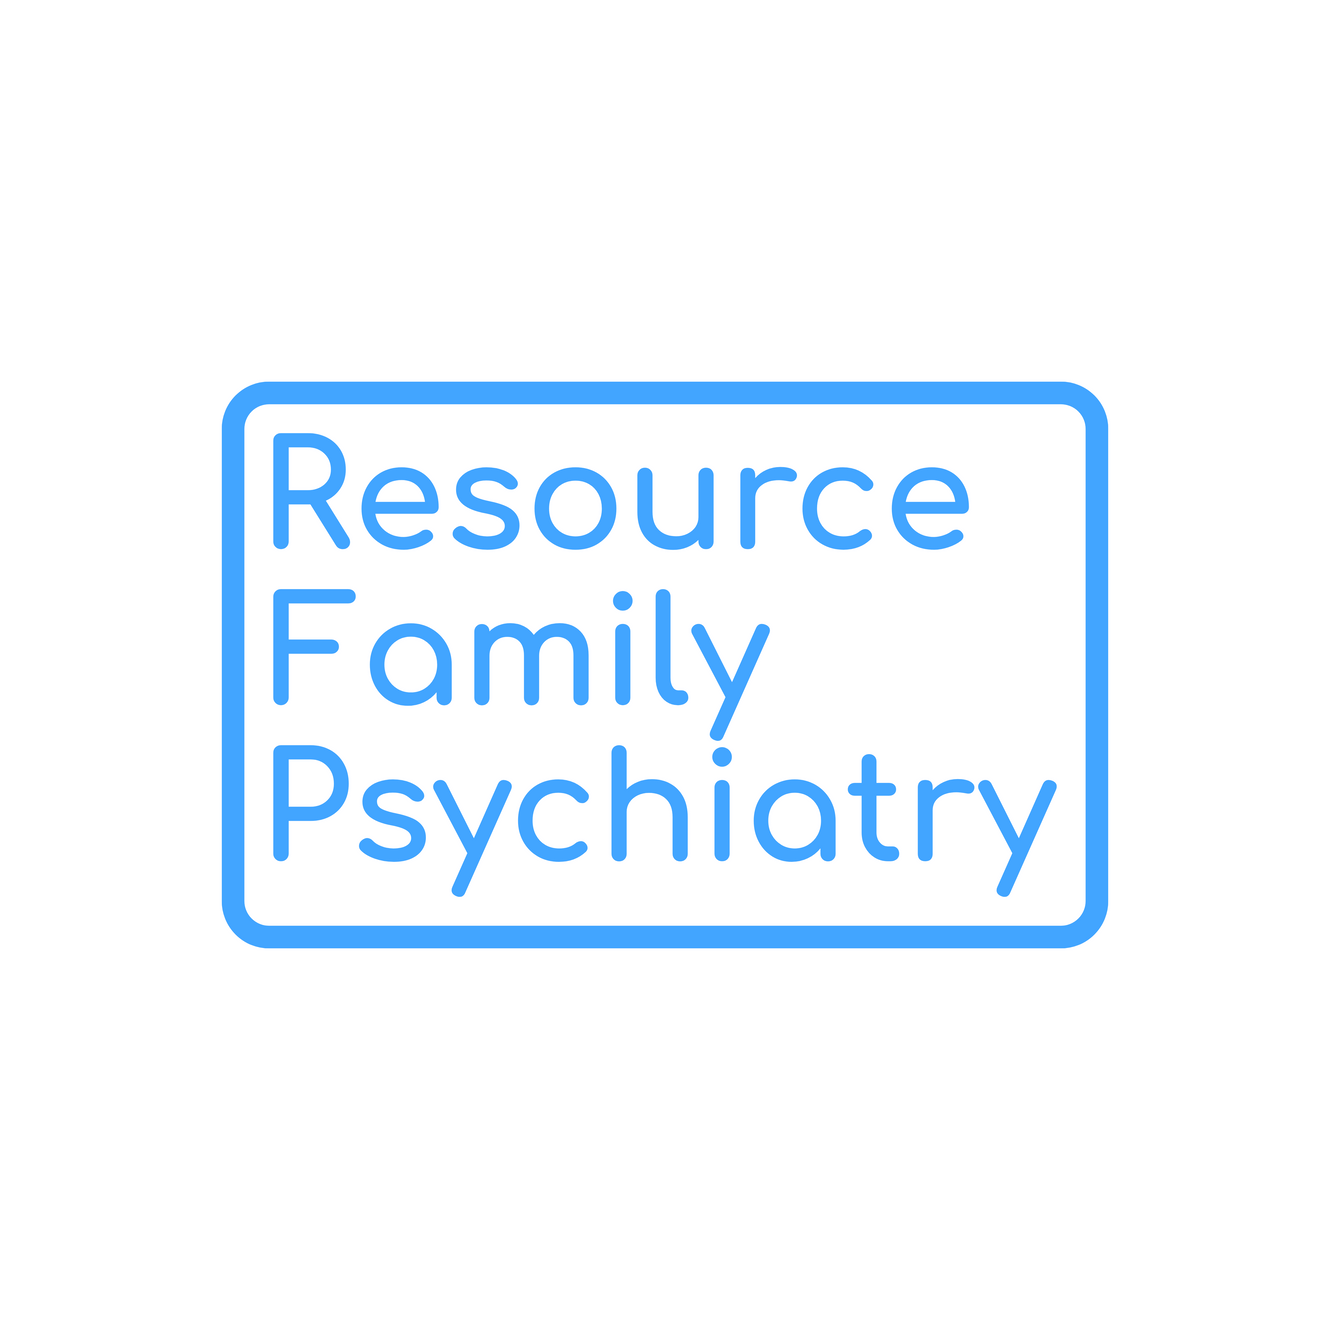 www.resourcefamilypsychiatry.com